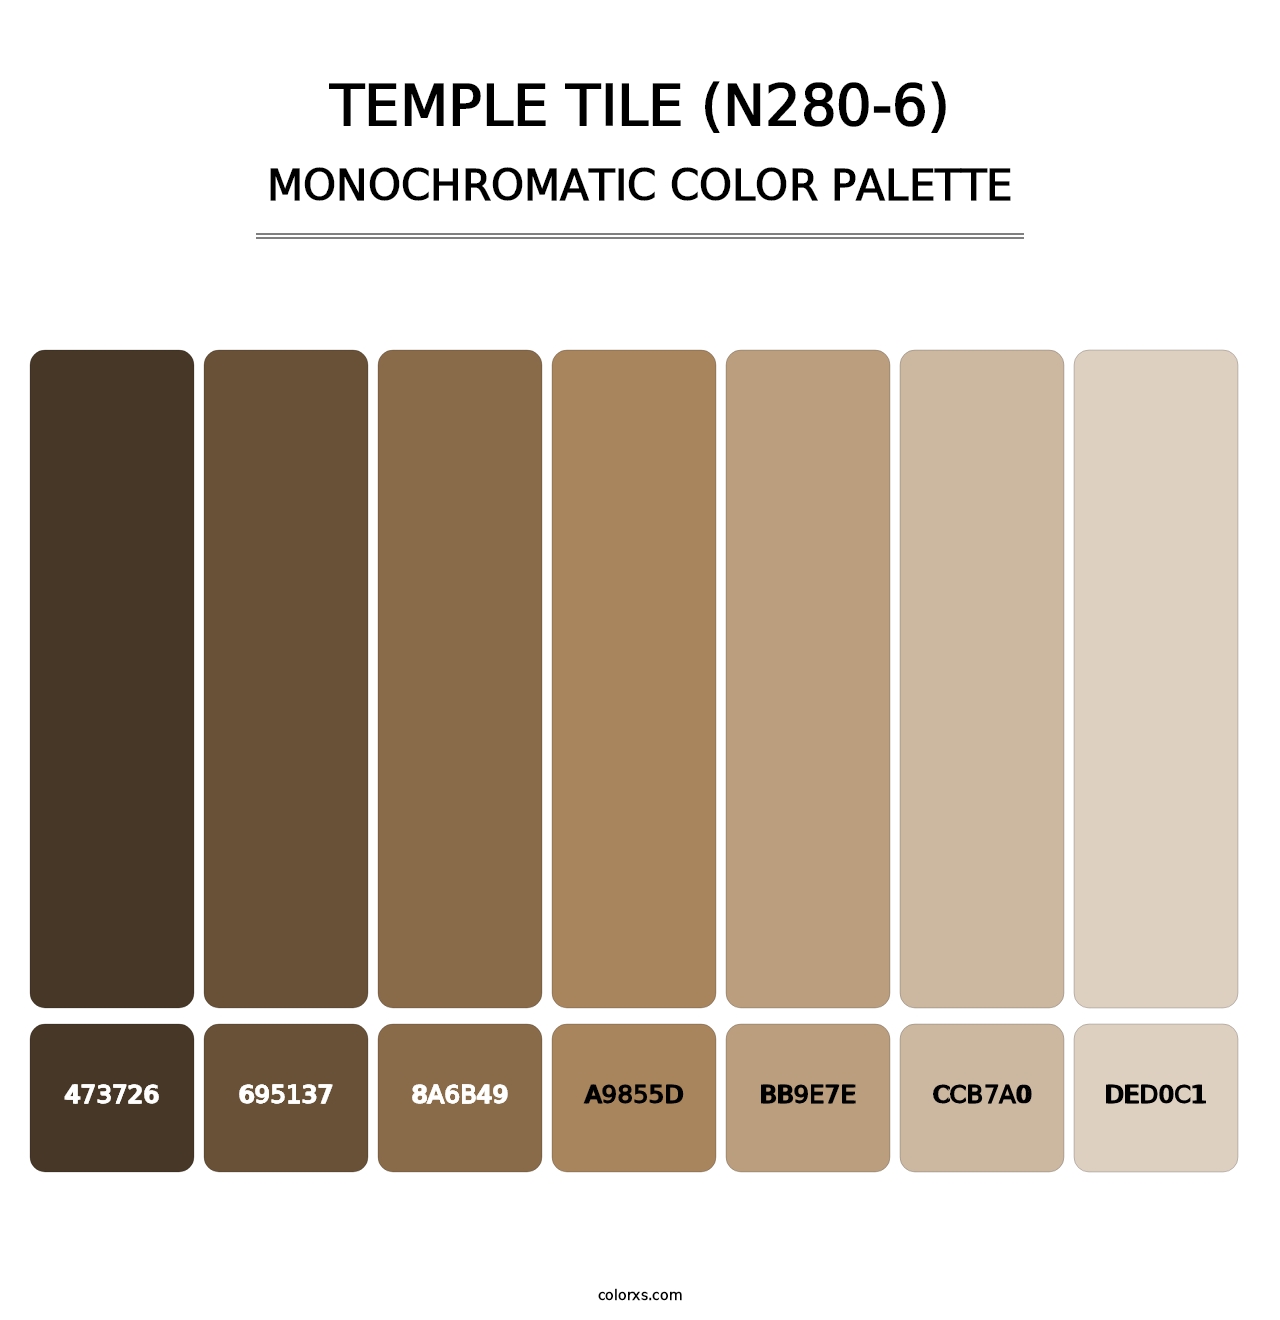 Temple Tile (N280-6) - Monochromatic Color Palette